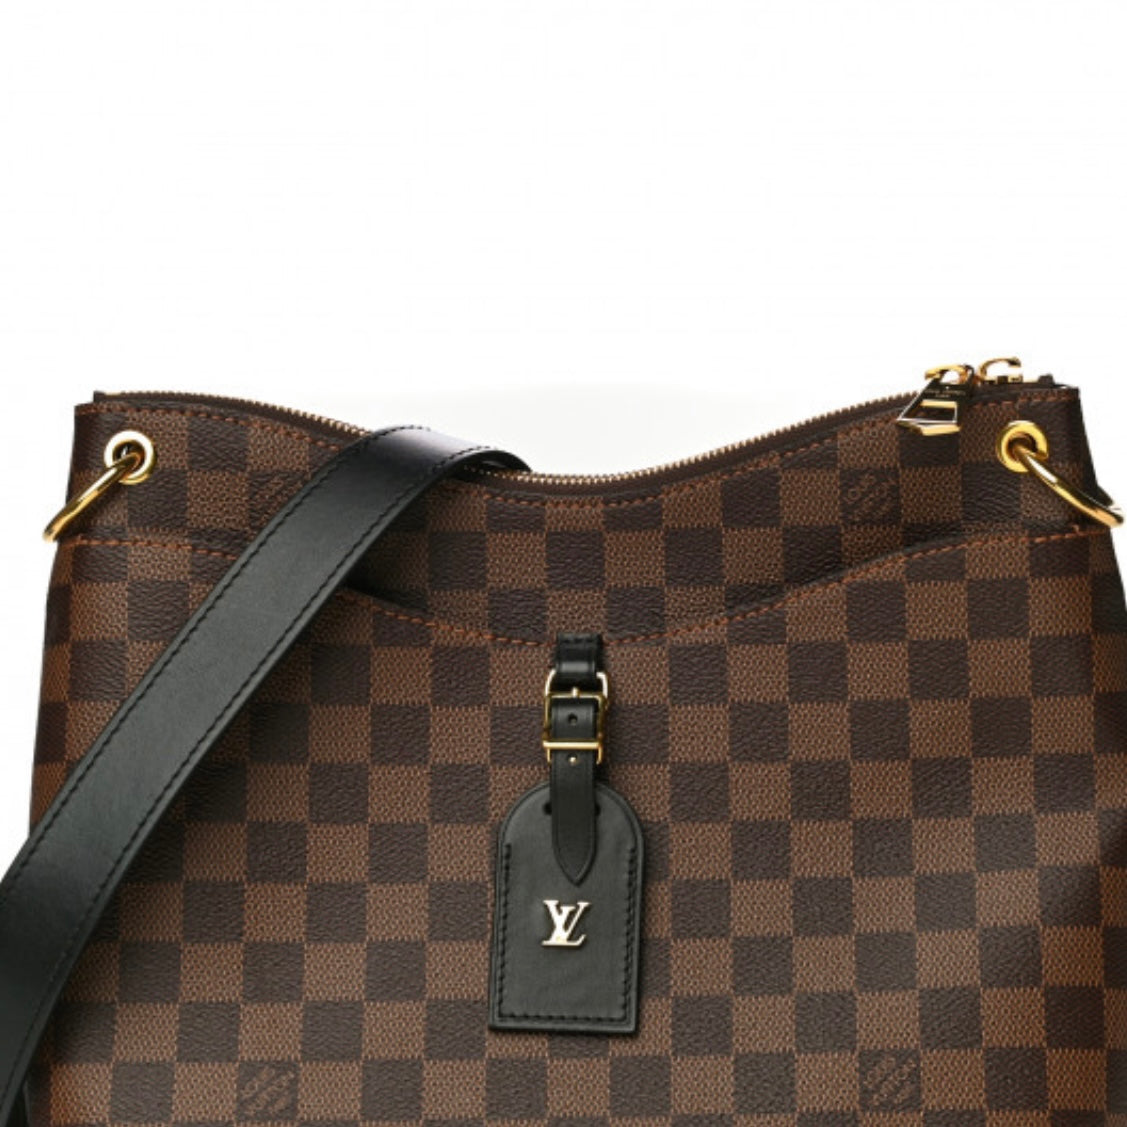 Louis Vuitton Damier Ebene Duomo Handbag